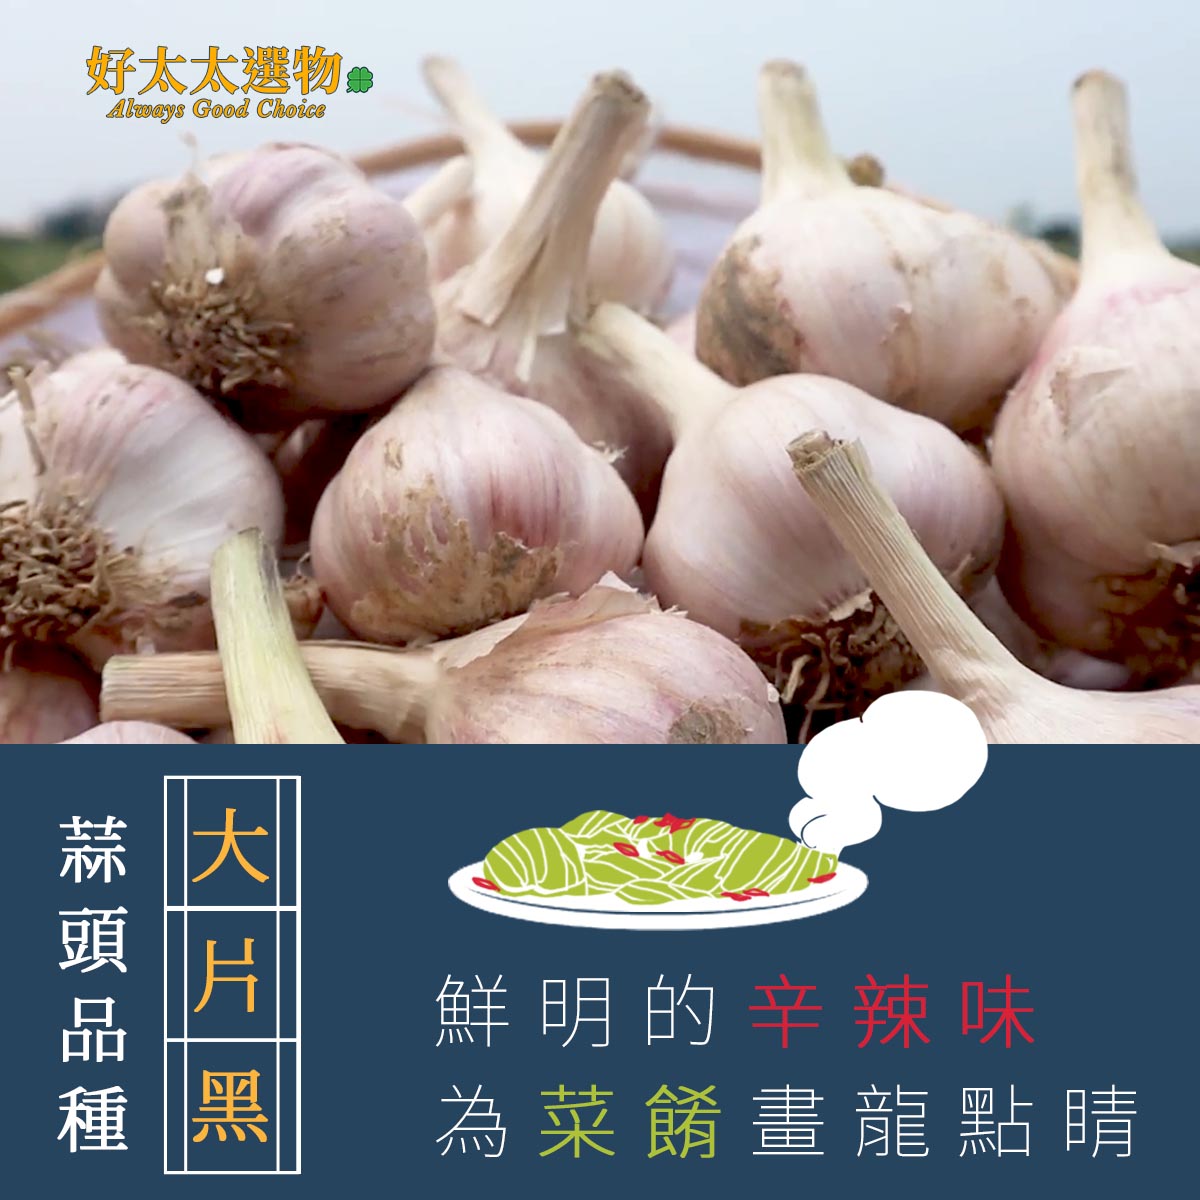 蒜頭是台灣料理中非常重要的味道，買多一點，就像衛生紙一樣，一定用的到也用的完的。